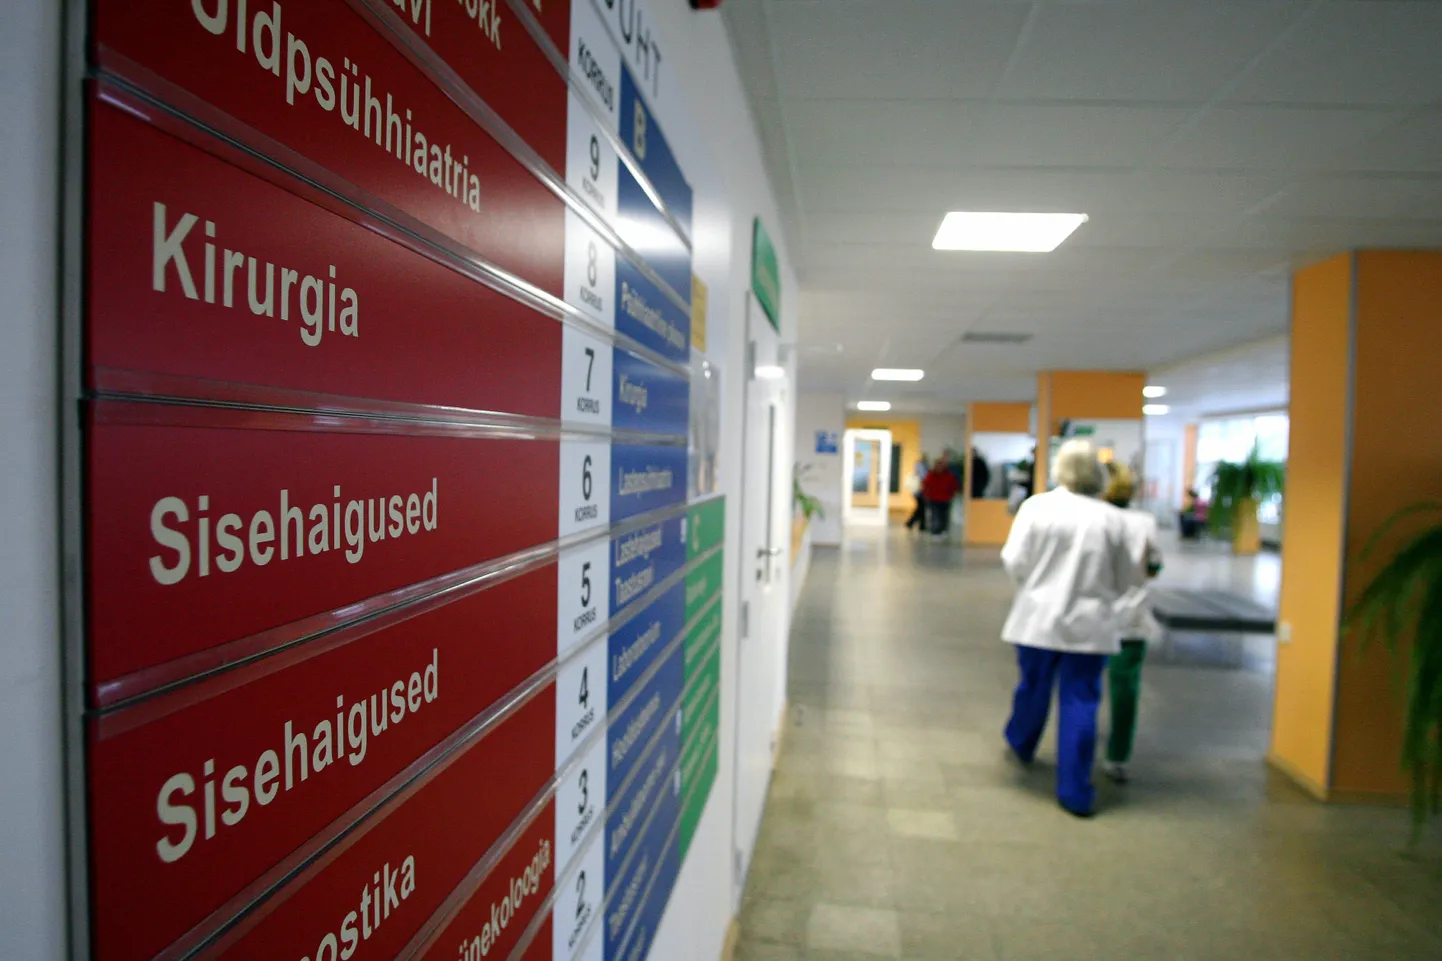 Valitsuse tervisepoliitikat mõjutas arstide streik, mis sundis prioriteete  ümber muutma